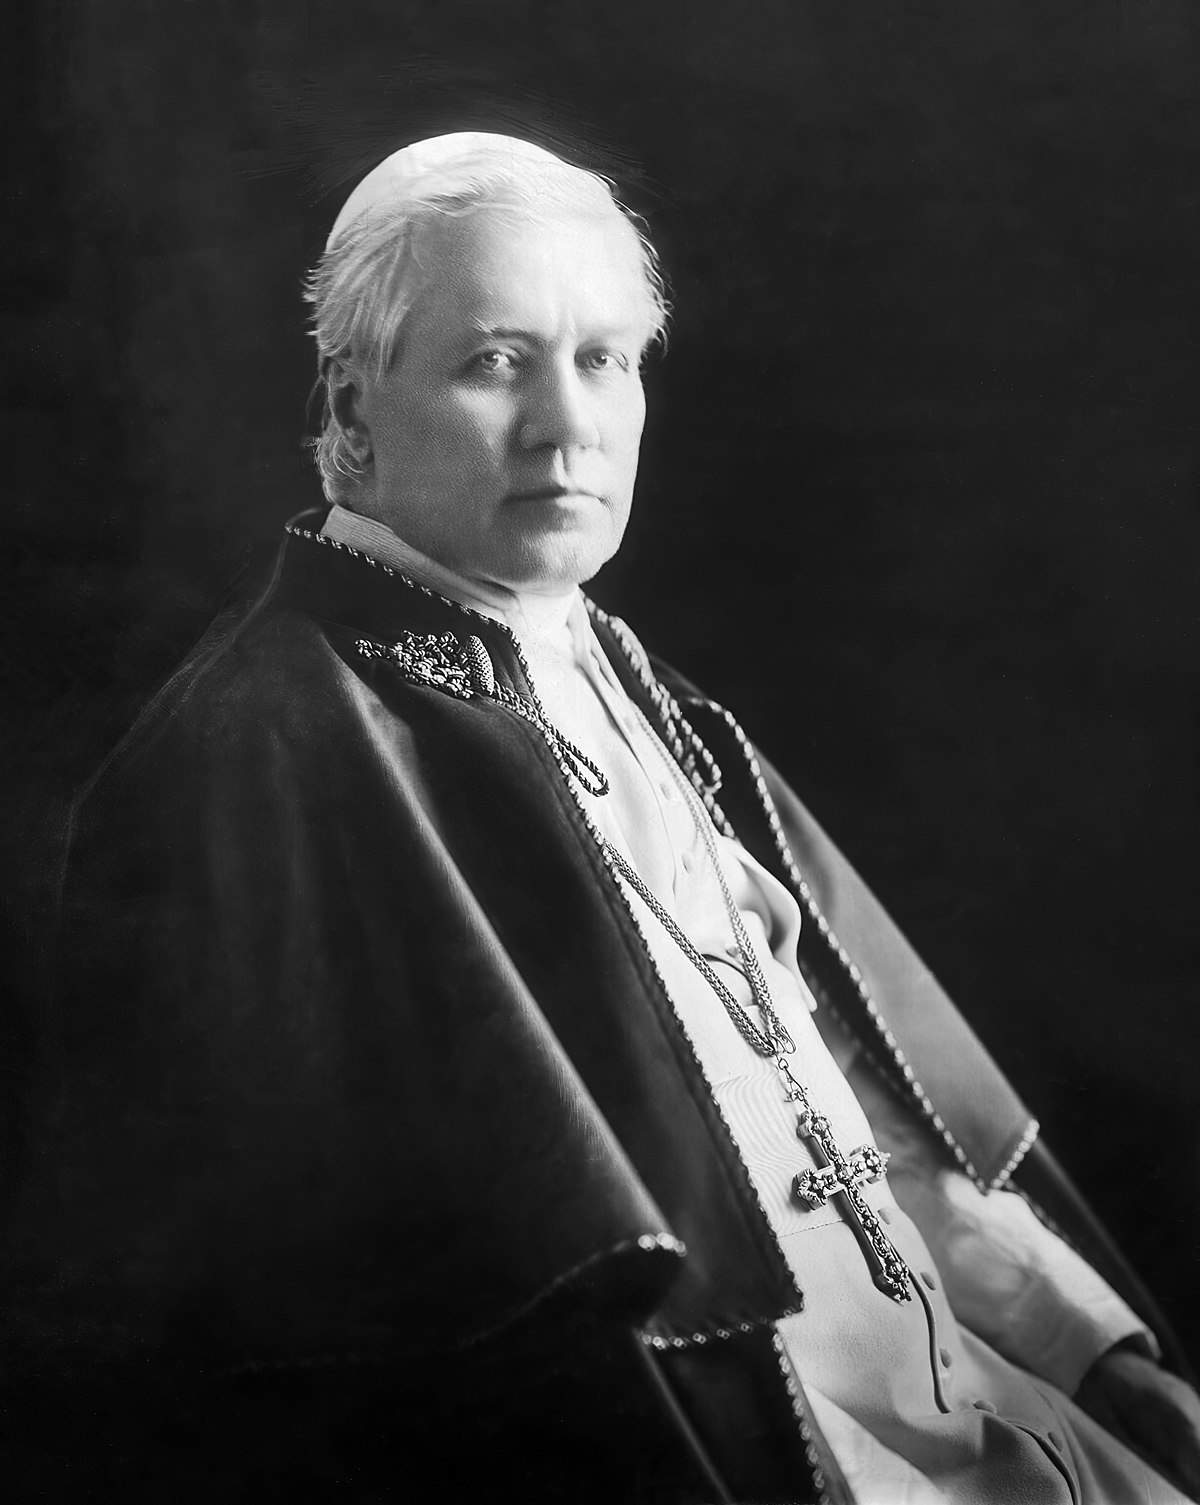 Día de Pío X. Fuente |Wikipedia.